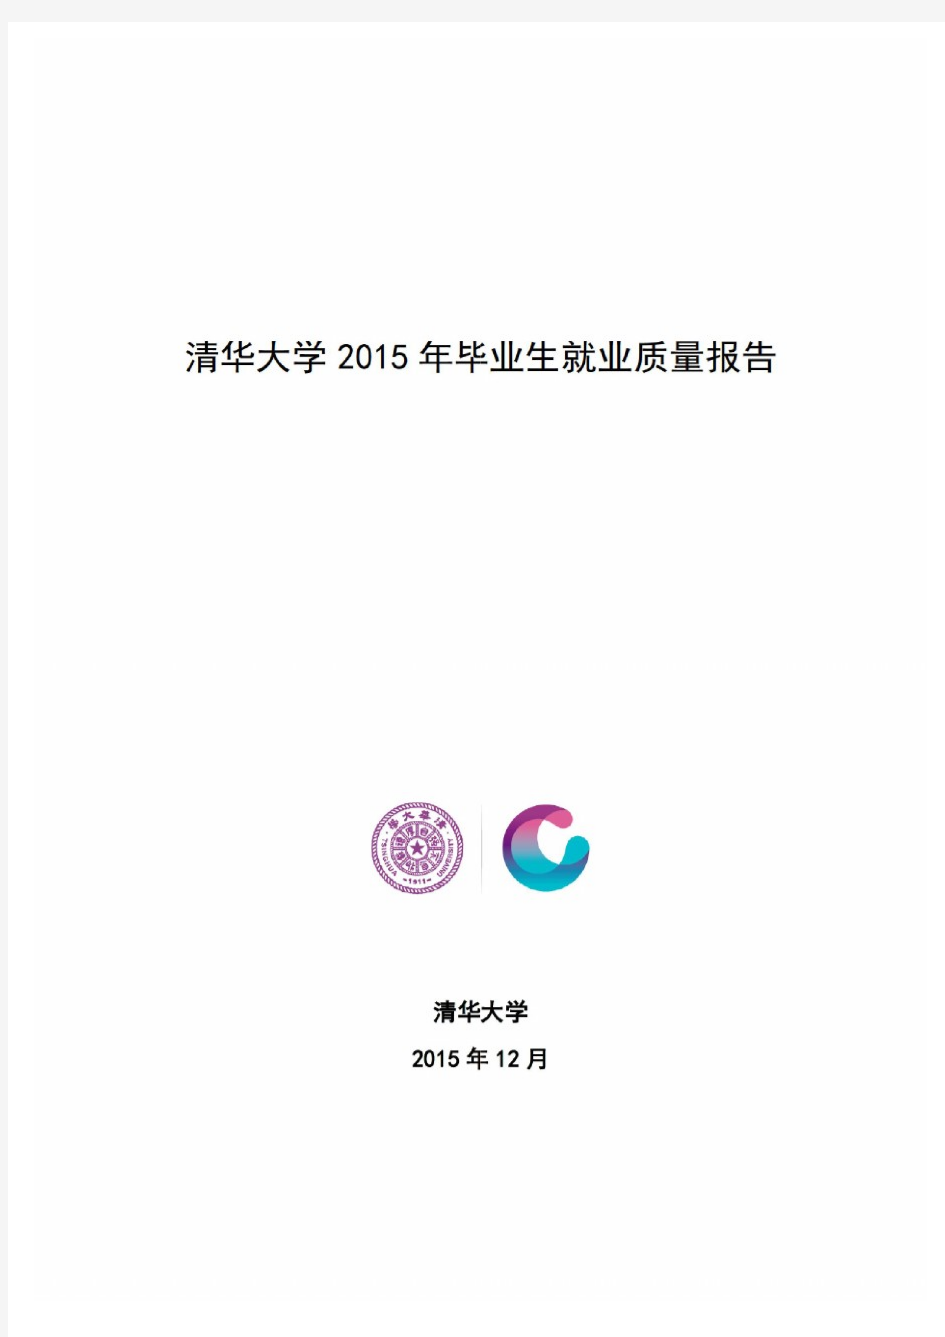 清华大学2015年毕业生就业质量报告